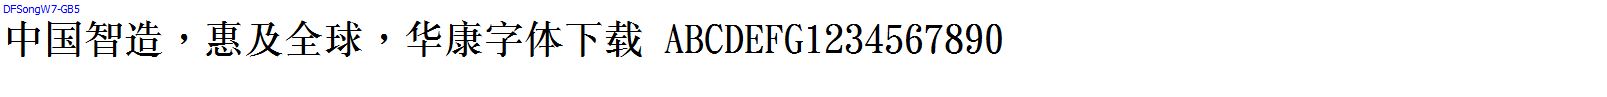 華康字體DFSongW7-GB5.ttc